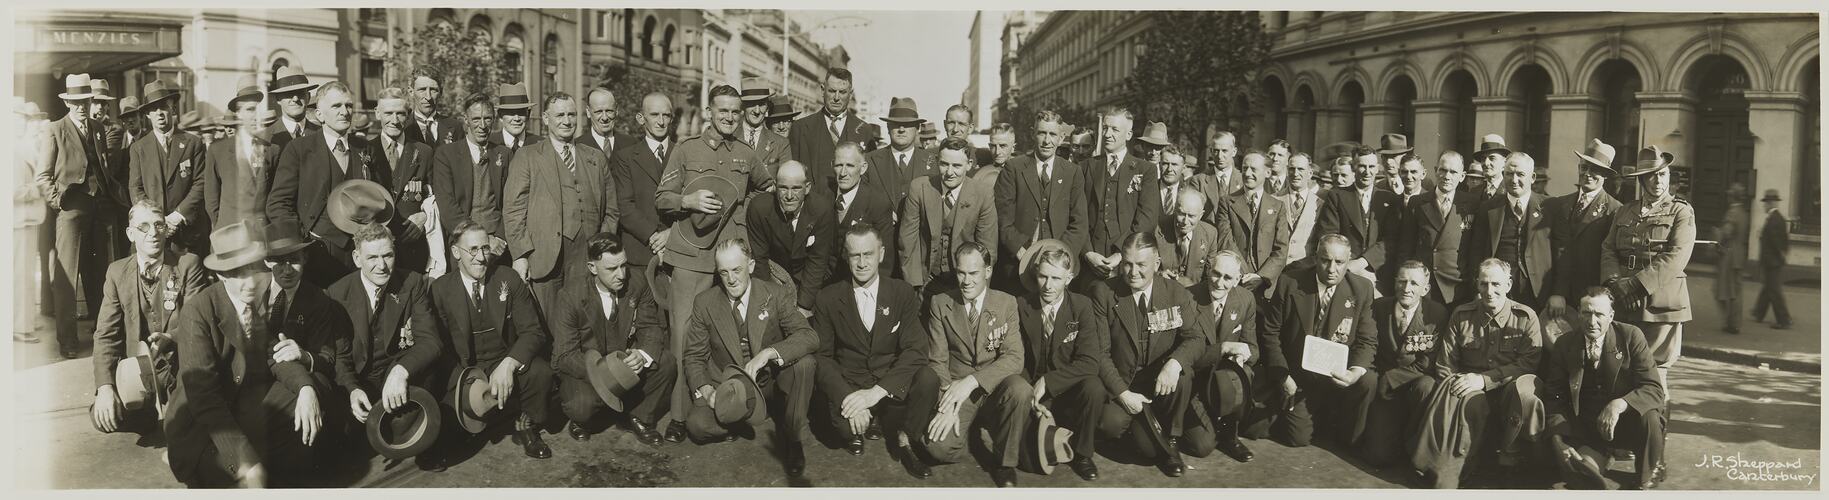 15/47 Battalion, Anzac Day, Melbourne, circa 1930s